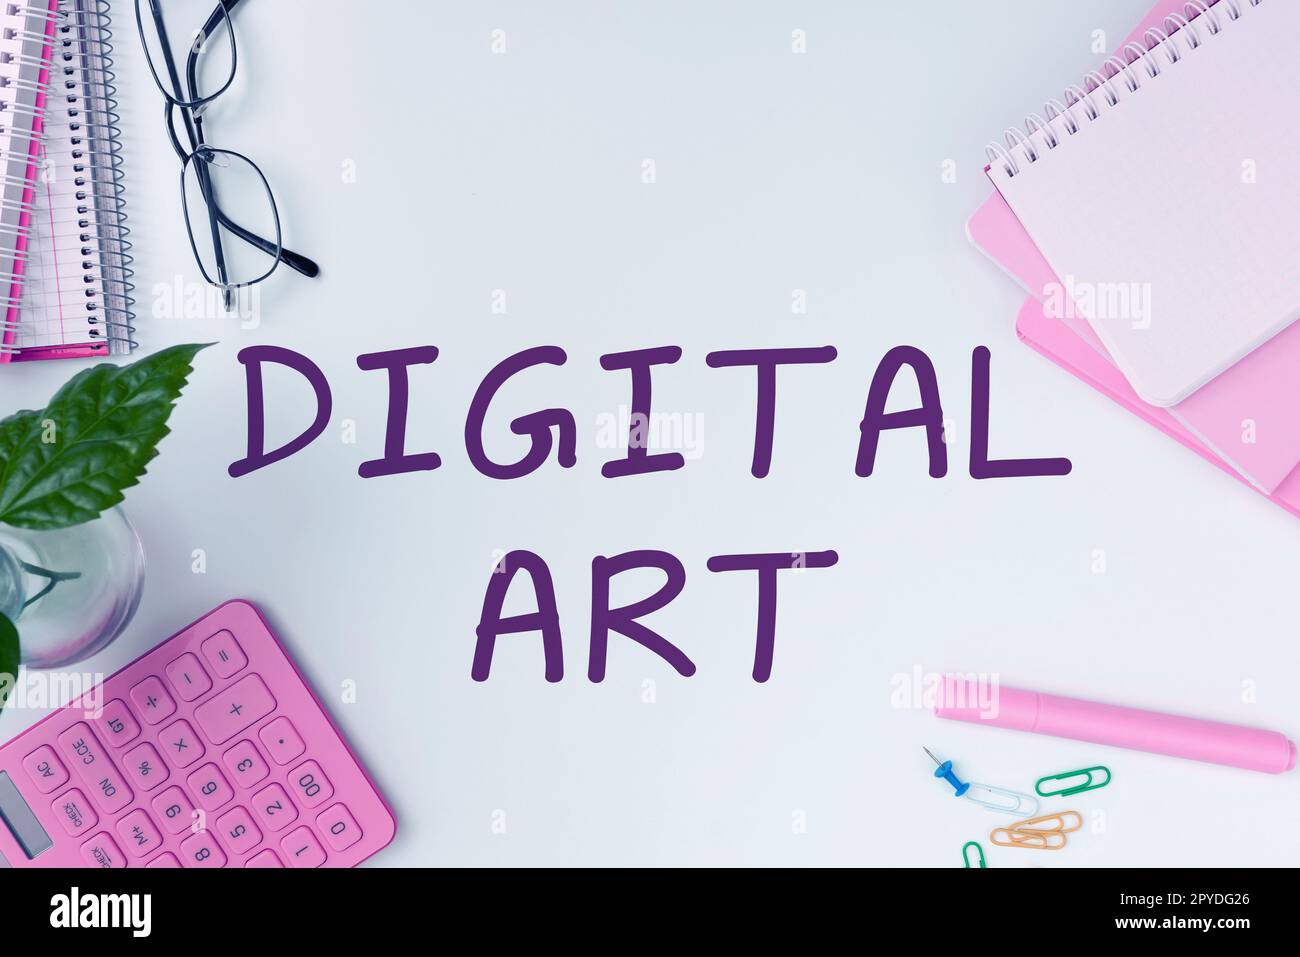 Affichage conceptuel Art numérique Mot pour l'utilisation de l'habileté et de l'imagination créatrice caractérisée par la technologie informatisée Banque D'Images